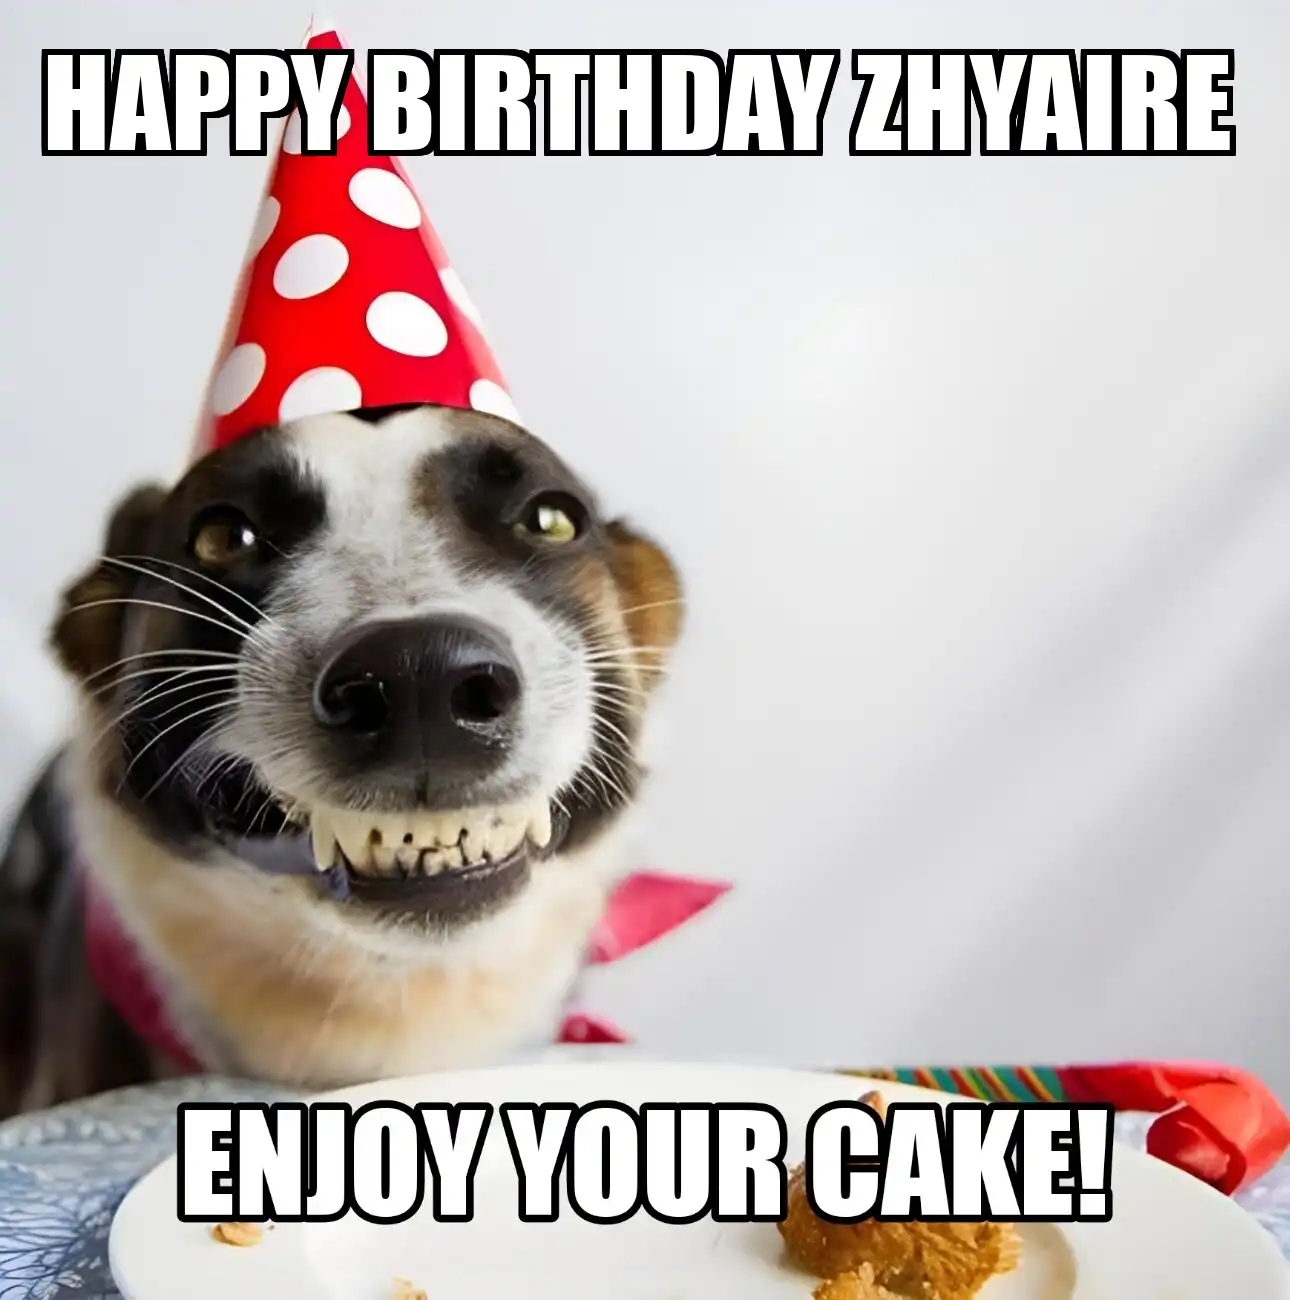 Happy Birthday Zhyaire Enjoy Your Cake Dog Meme